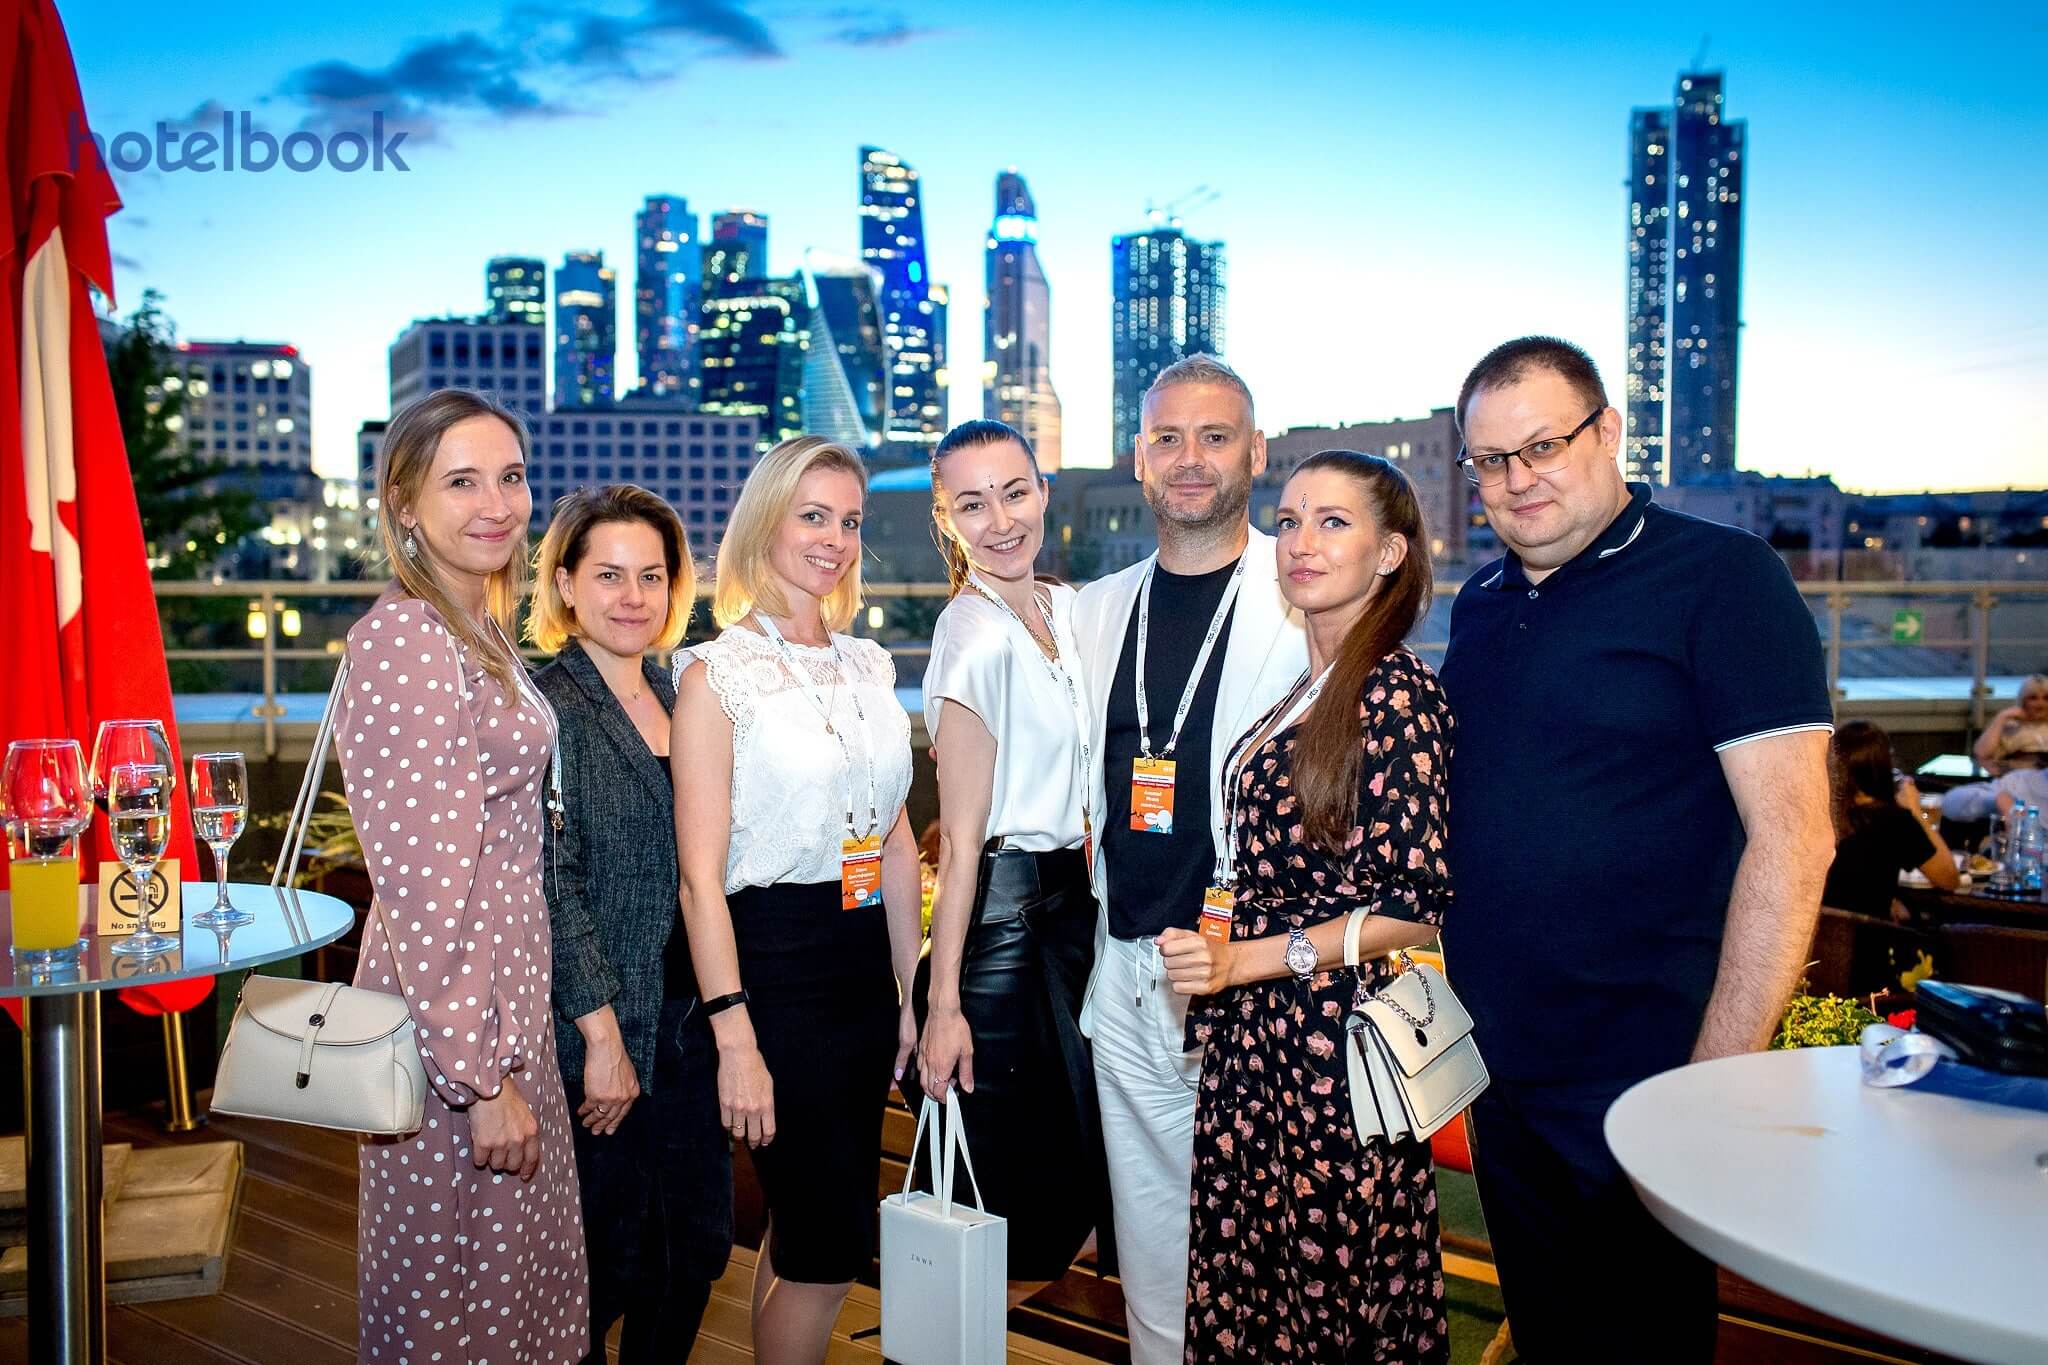 Летние мотивы и бизнес туризм по-русски: как прошла 6-ая встреча Business Travel Community?